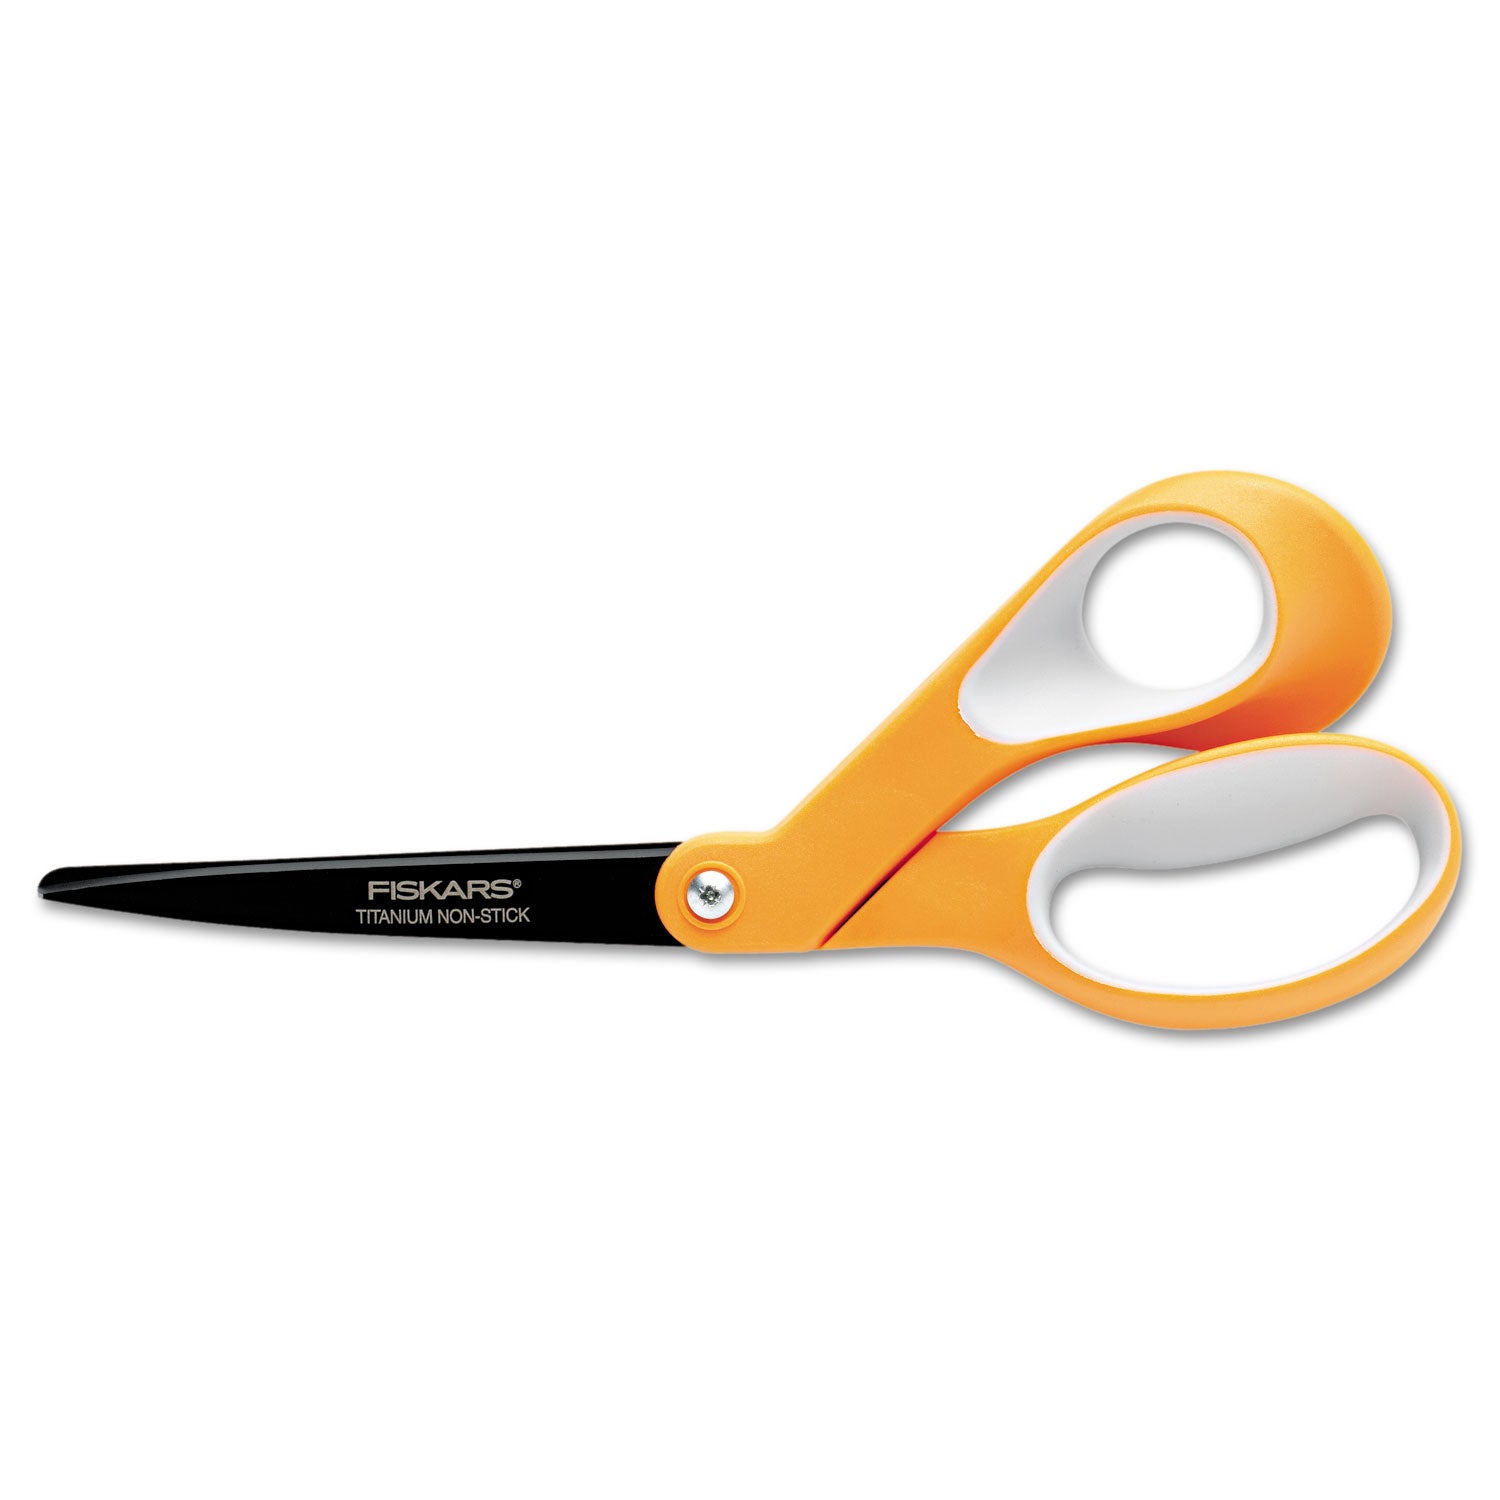 premier-non-stick-titanium-softgrip-scissors-8-long-31-cut-length-orange-gray-offset-handle_fsk1539001006 - 1